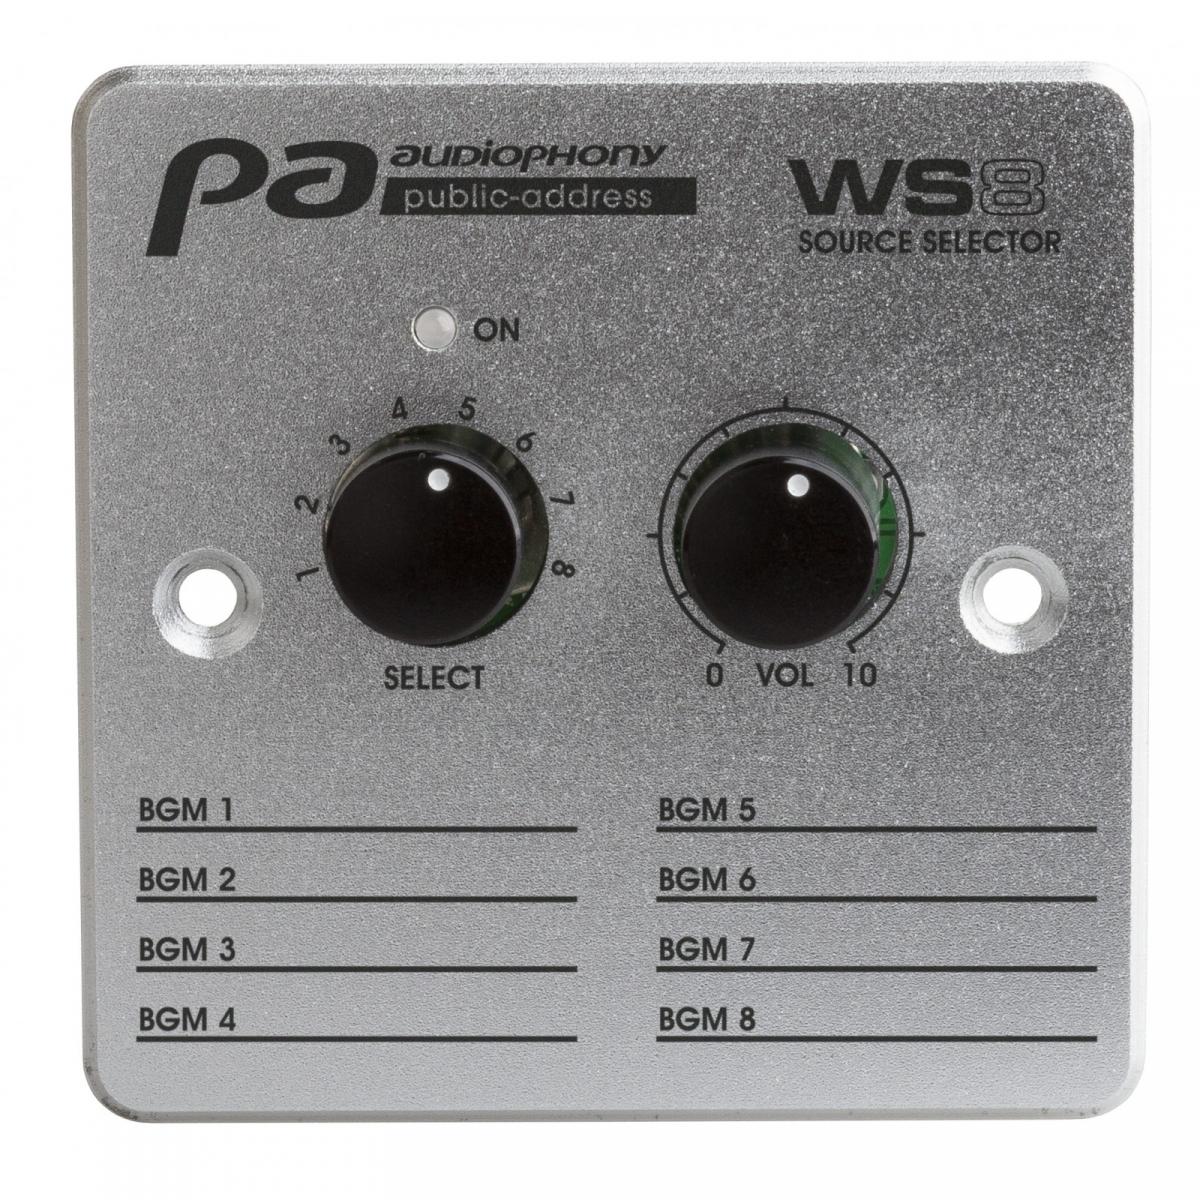 Audiophony WS8 